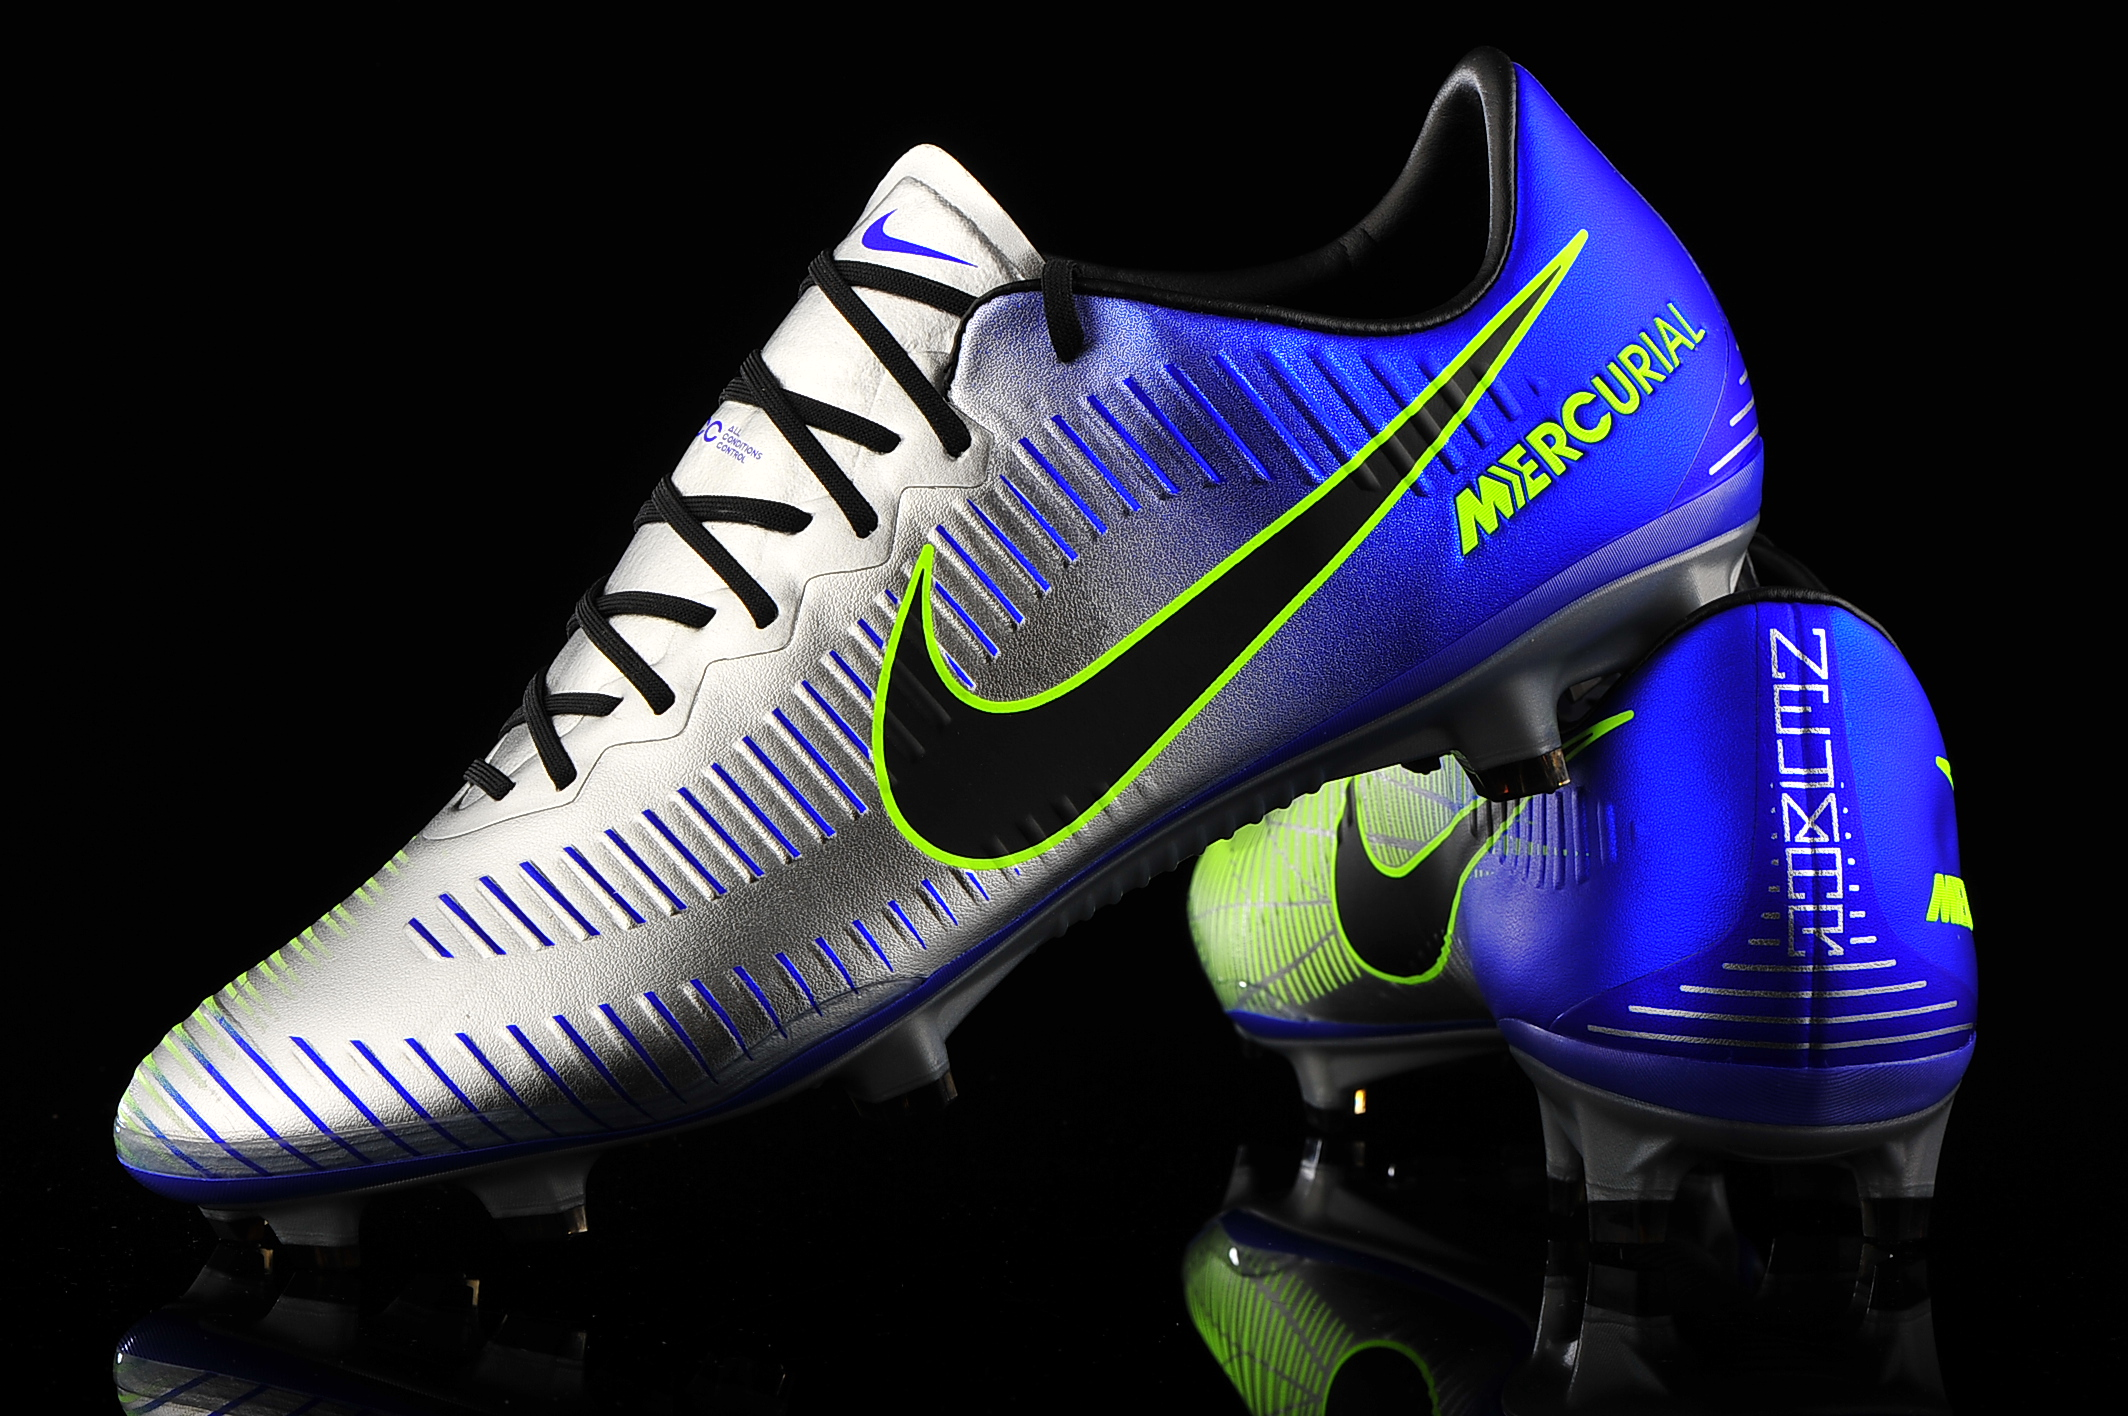 Nike Mercurial Vapor XI NJR FG 921547-407 Puro Fenomeno | R-GOL.com -  Football boots \u0026 equipment